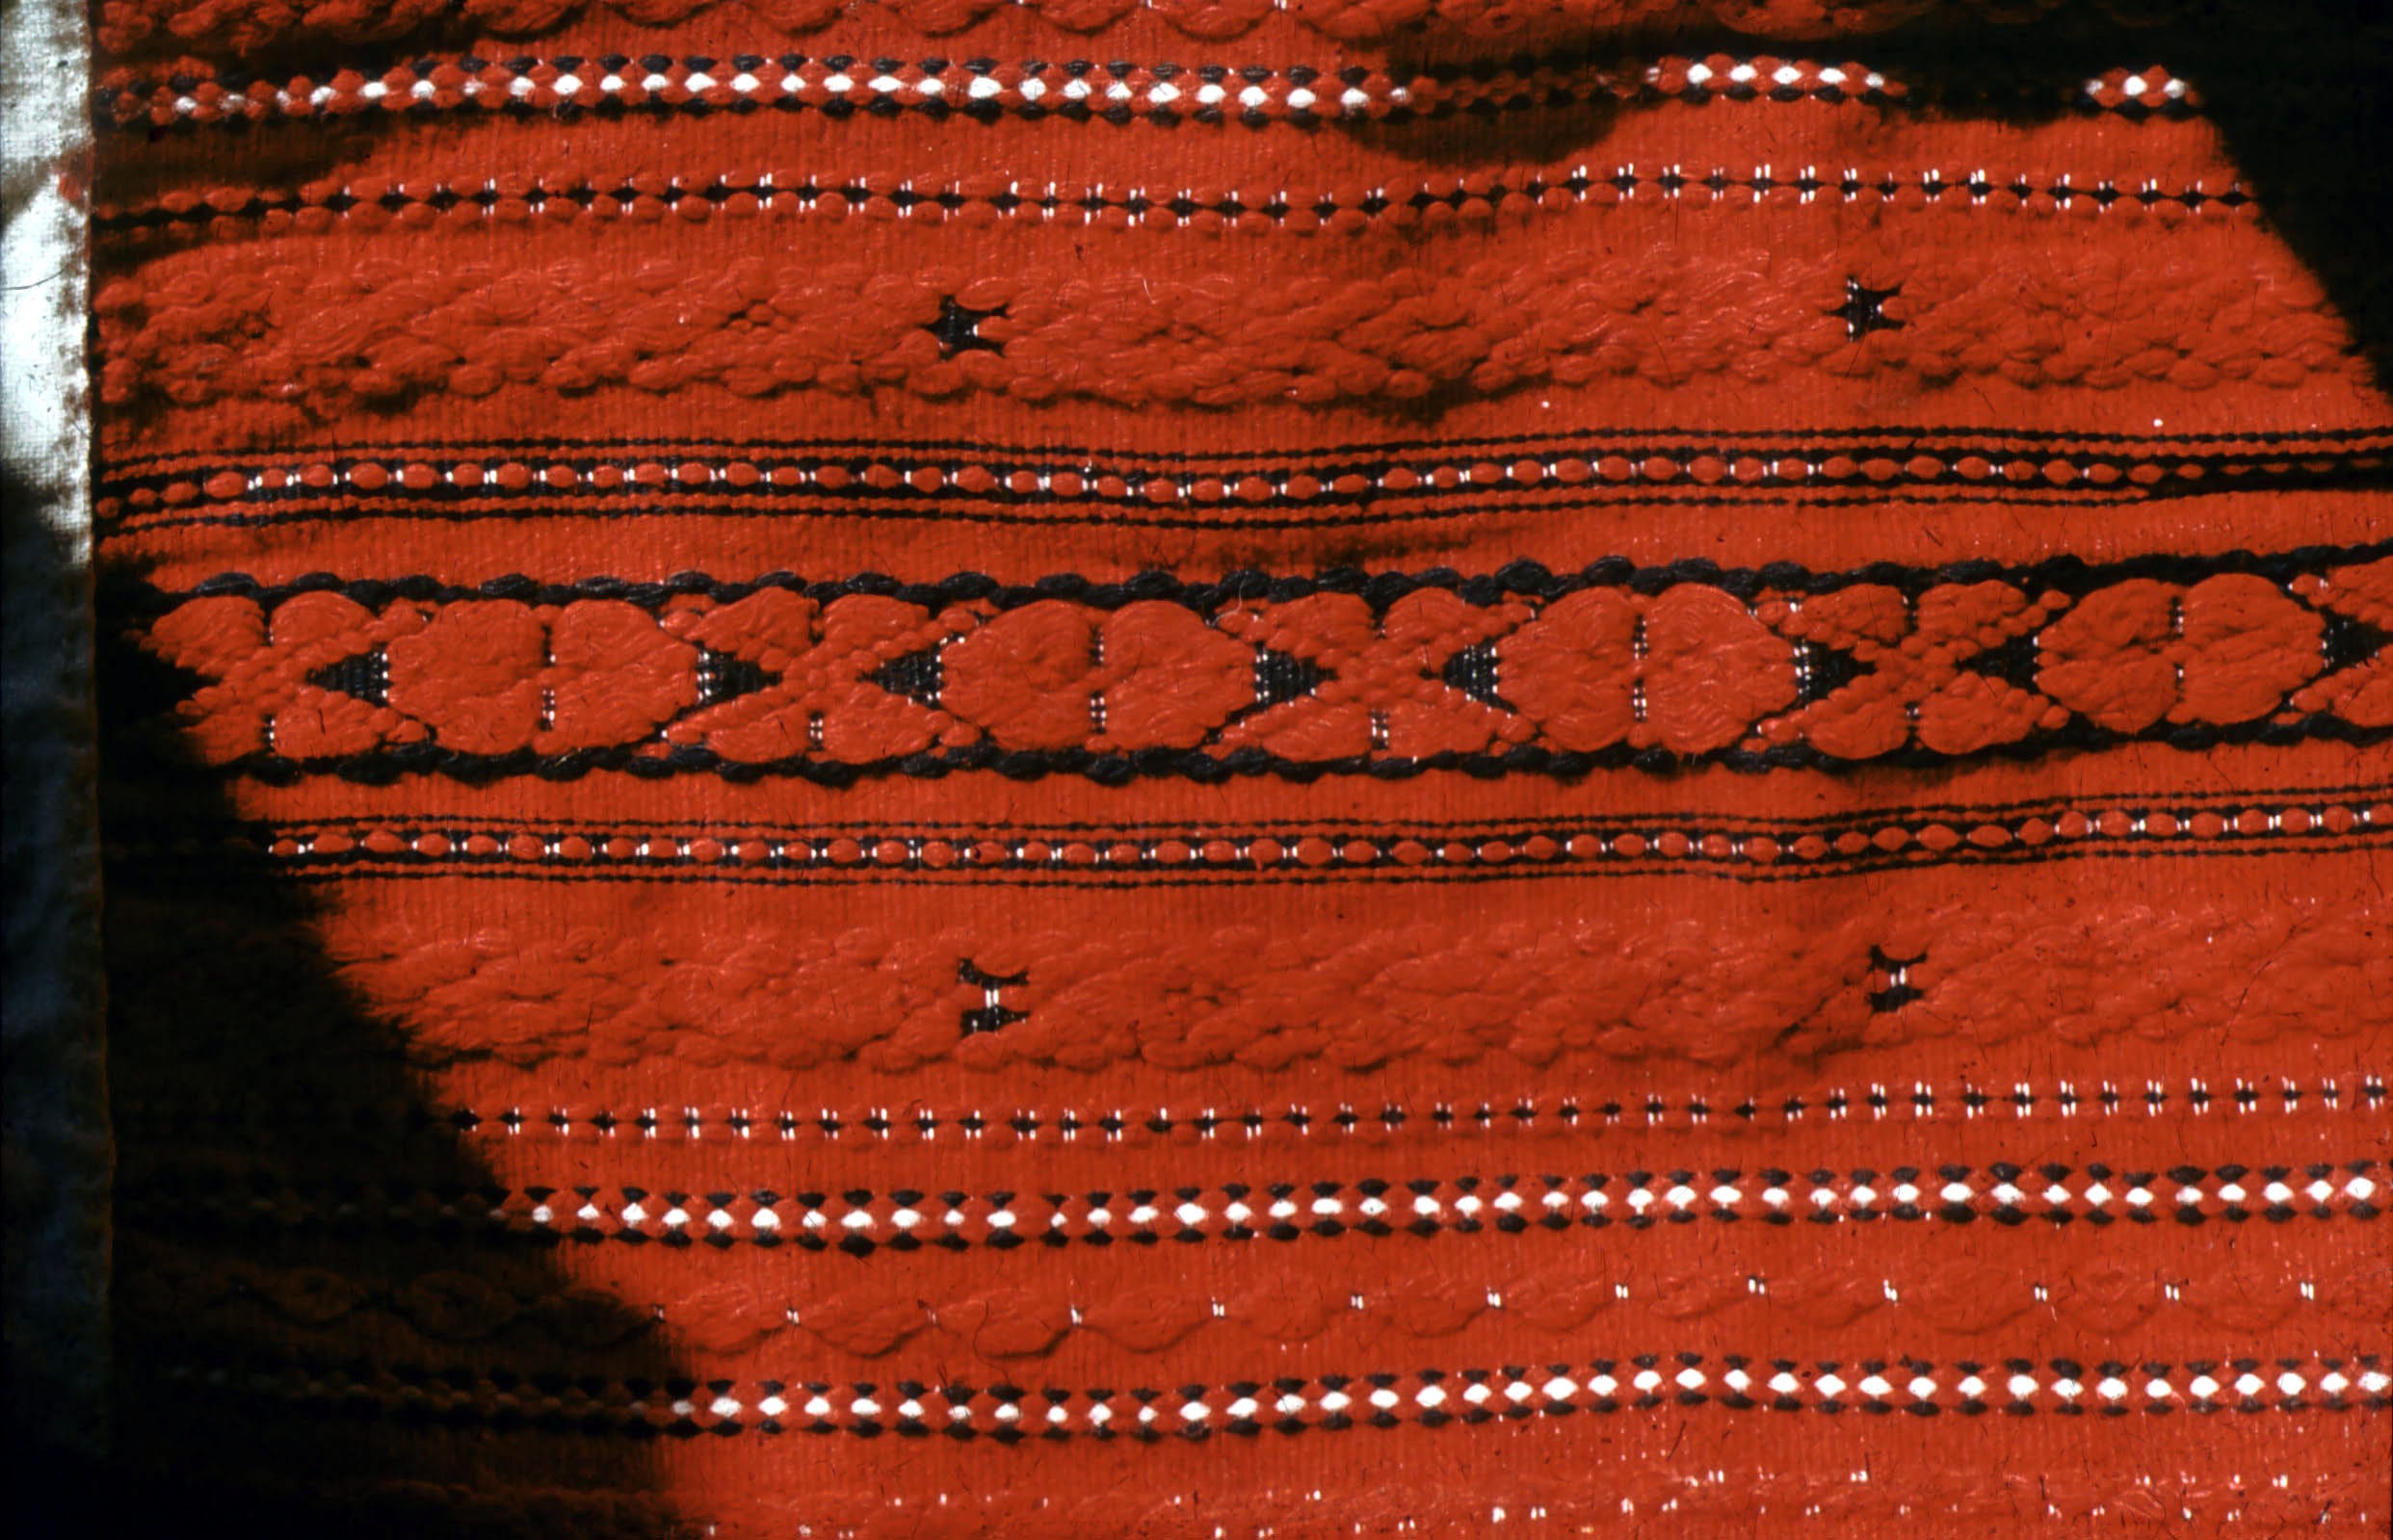 Lakócsai szőttes (Rippl-Rónai Múzeum CC BY-NC-ND)